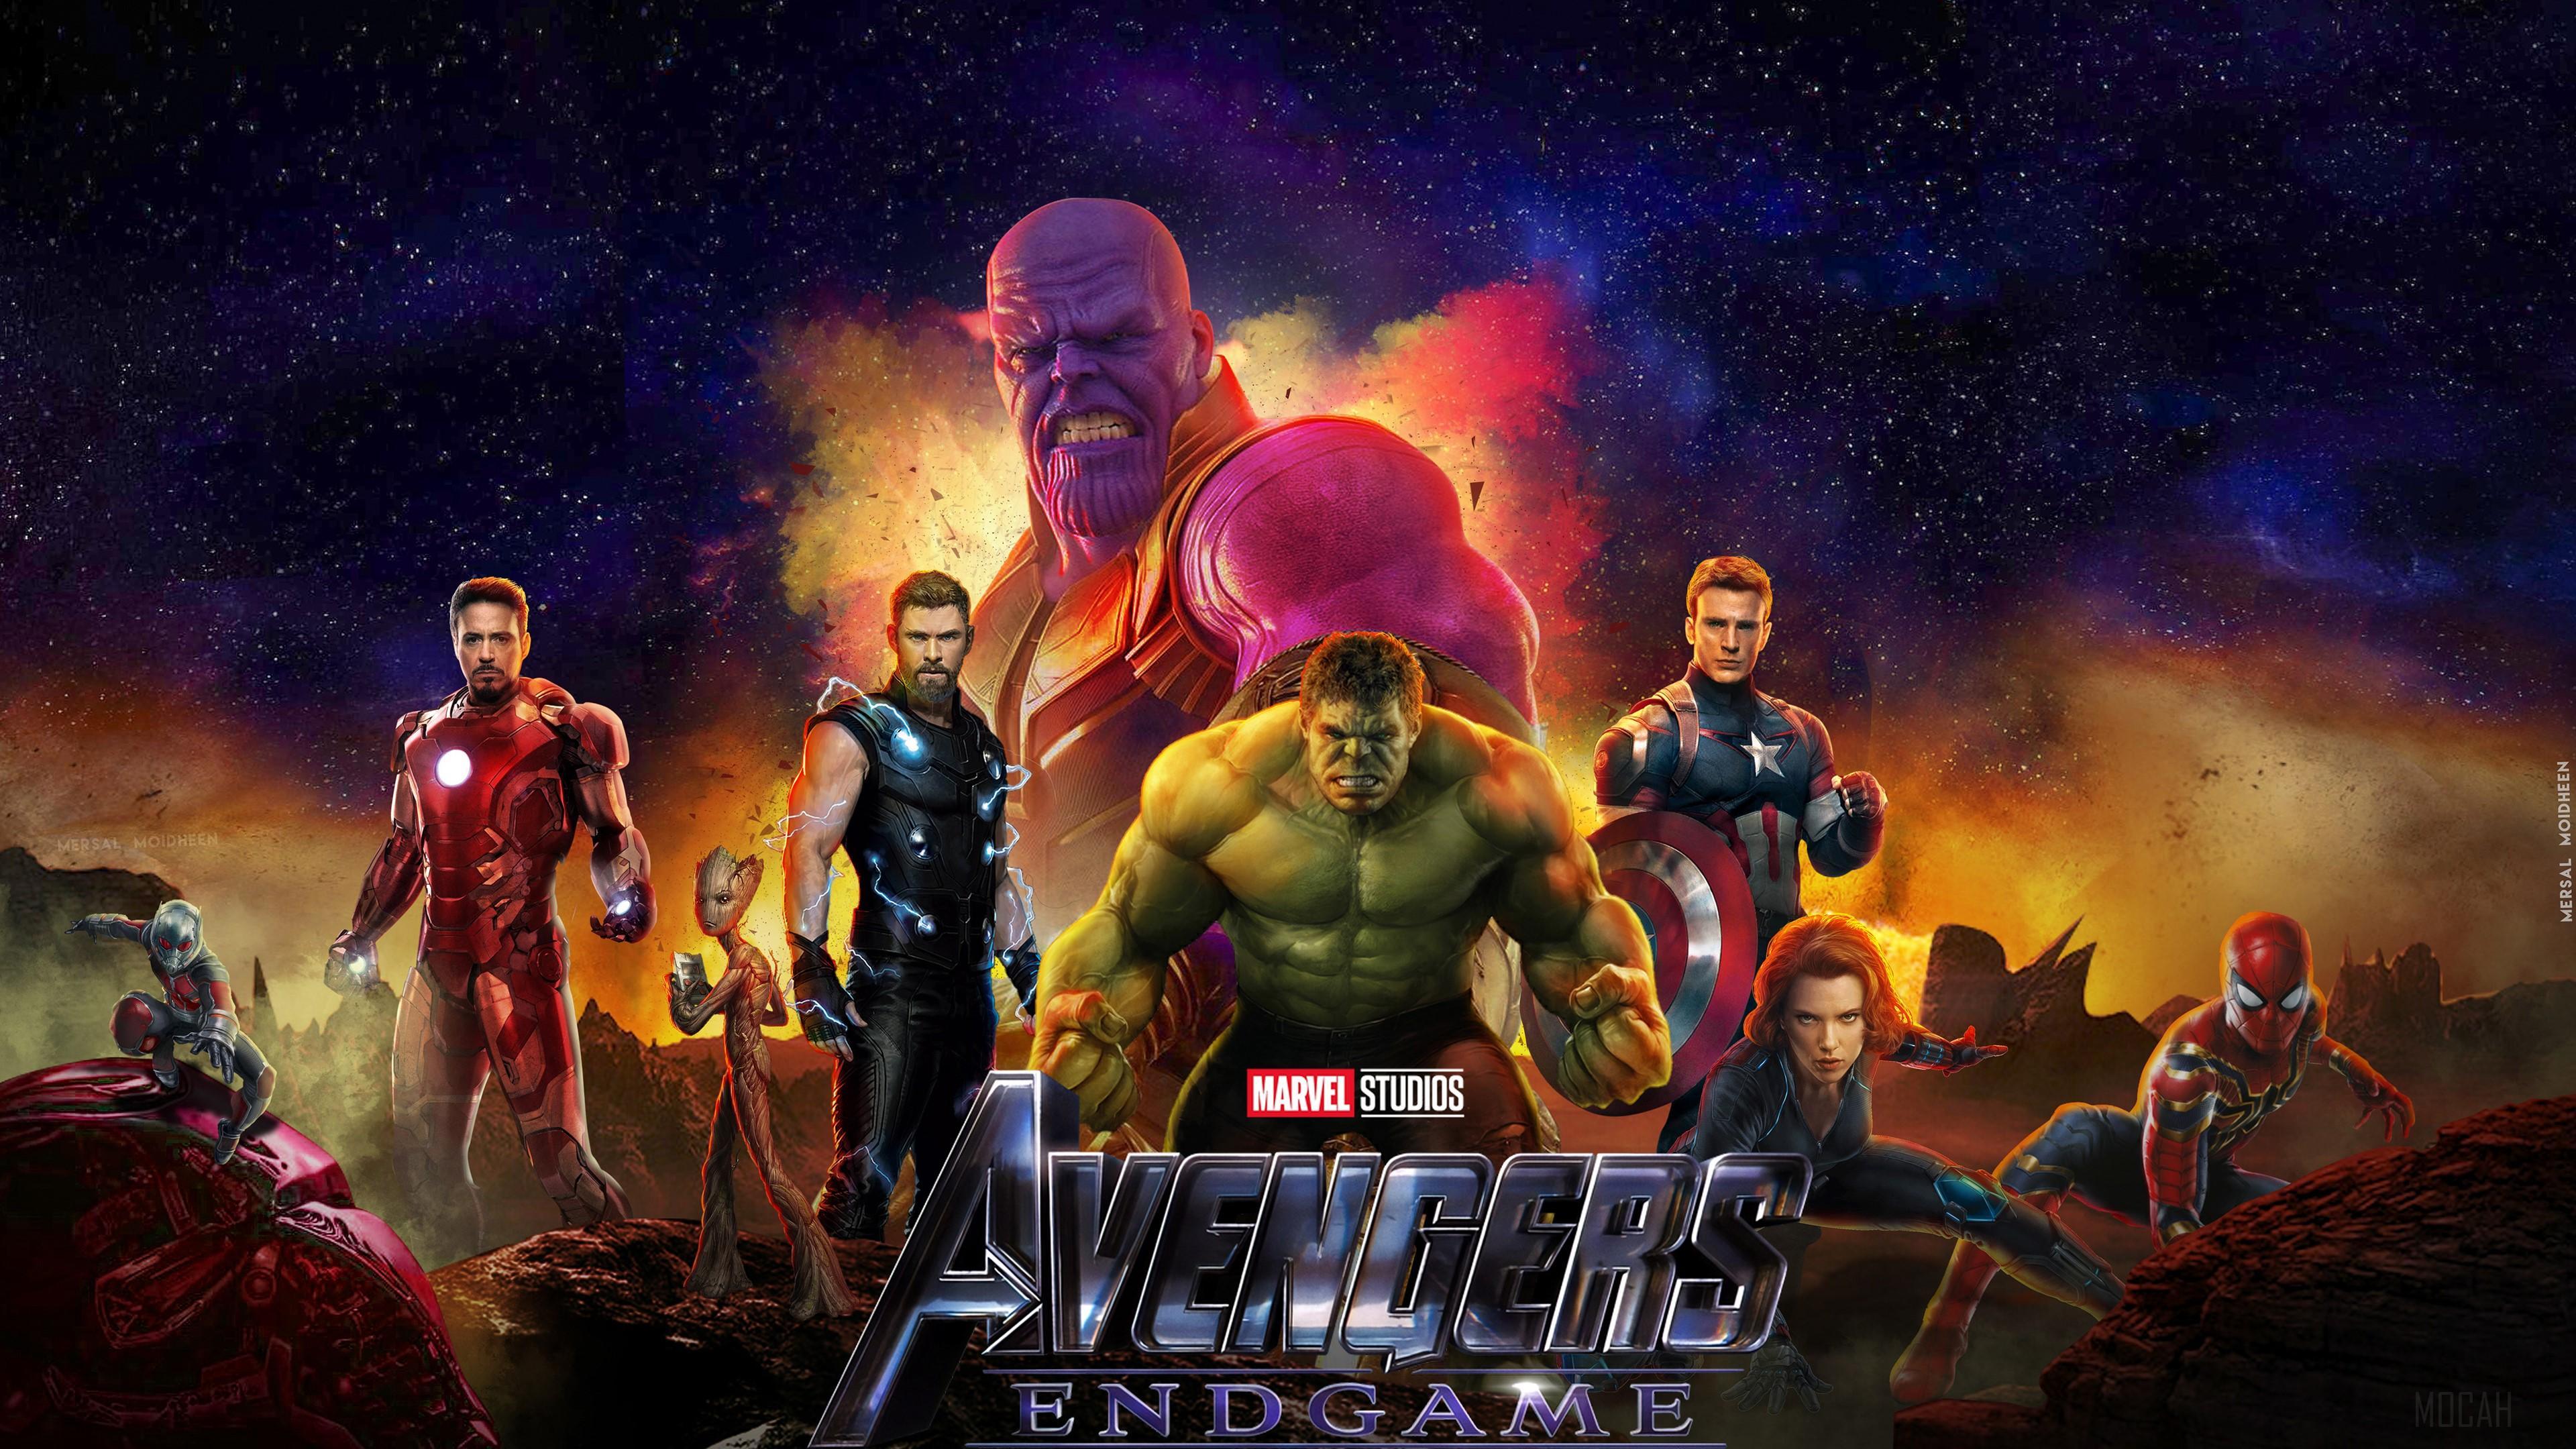 HD wallpaper, 2019 Avengers Endgame New 4K